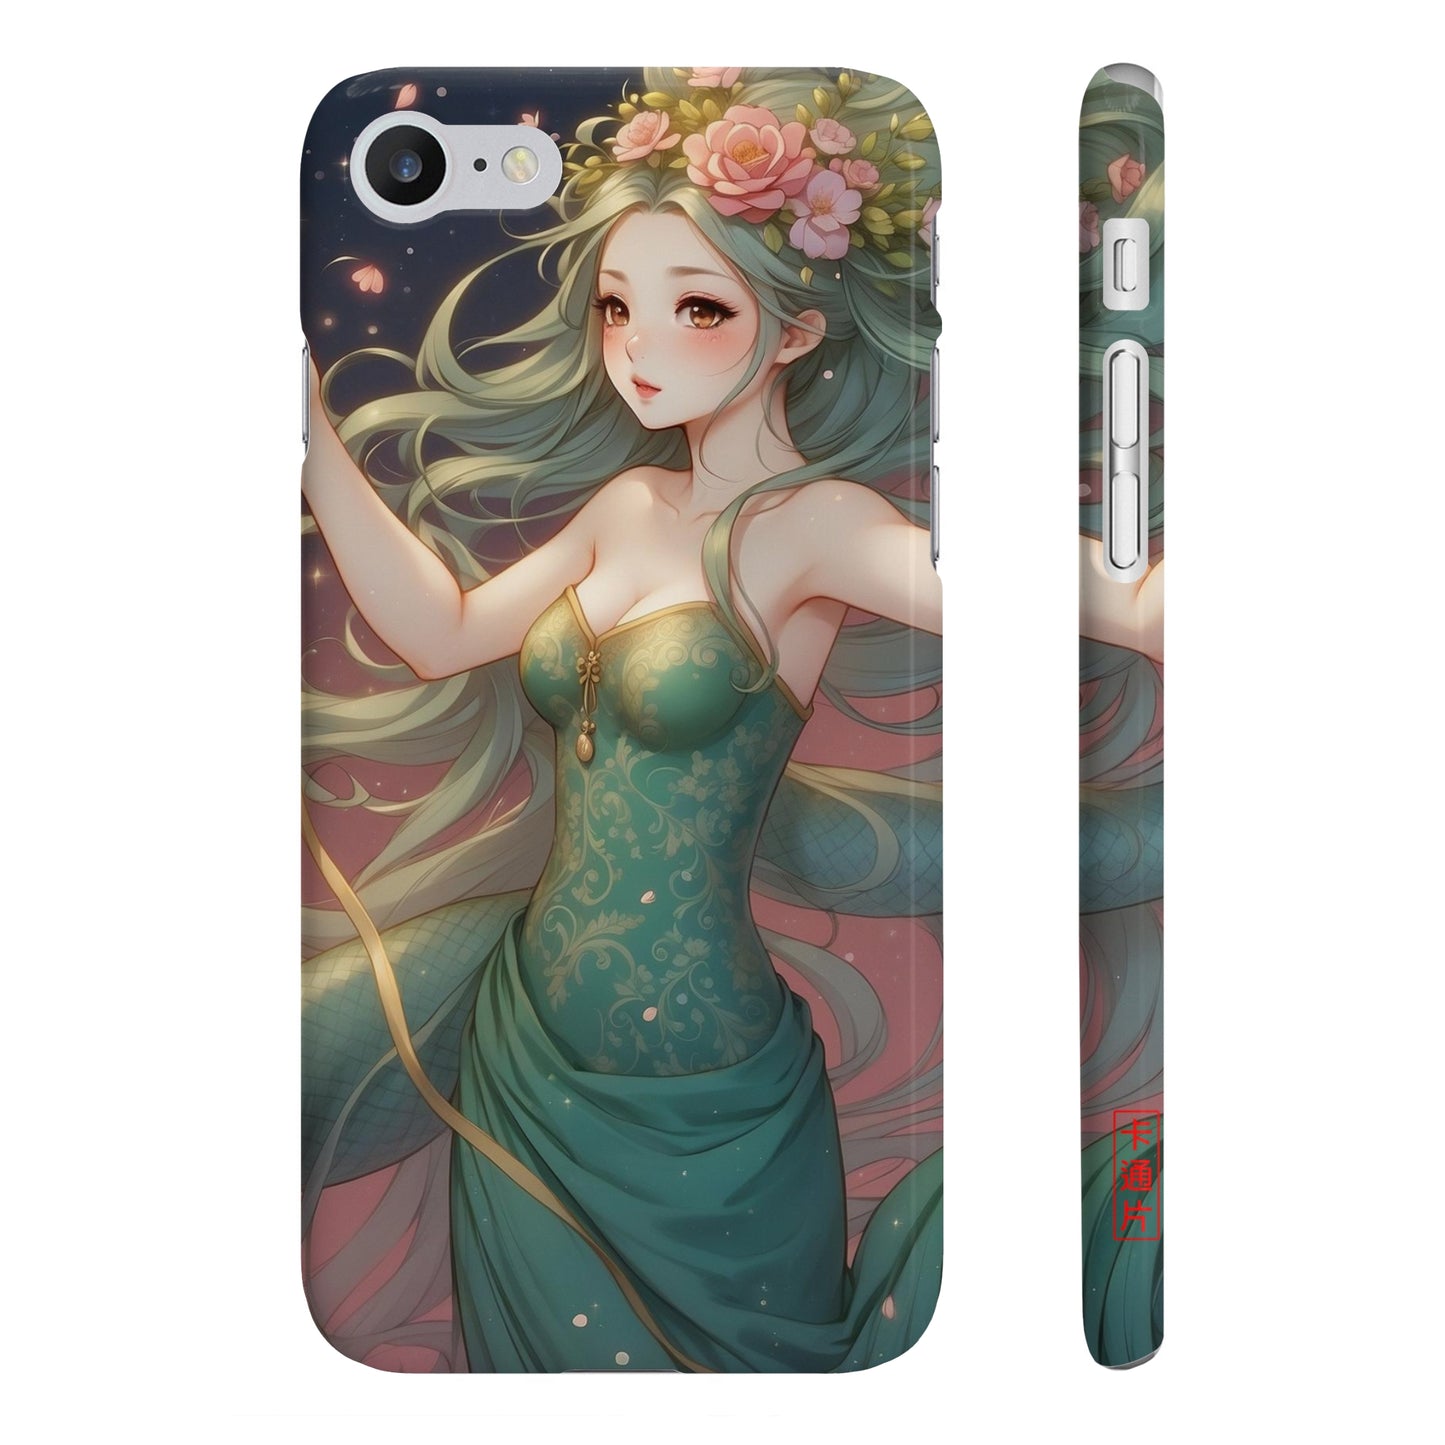 Kǎtōng Piàn - Mermaid Collection - 034 - Slim Phone Cases Printify